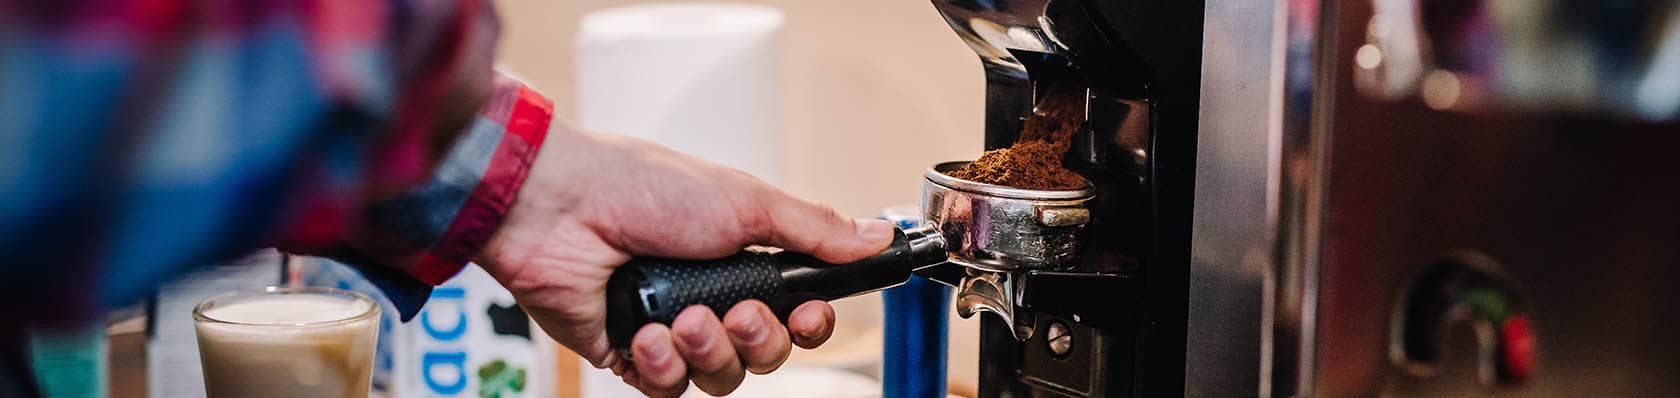 Les 7 meilleures machines à café grain 2024 – machine à café grain test &  comparatif